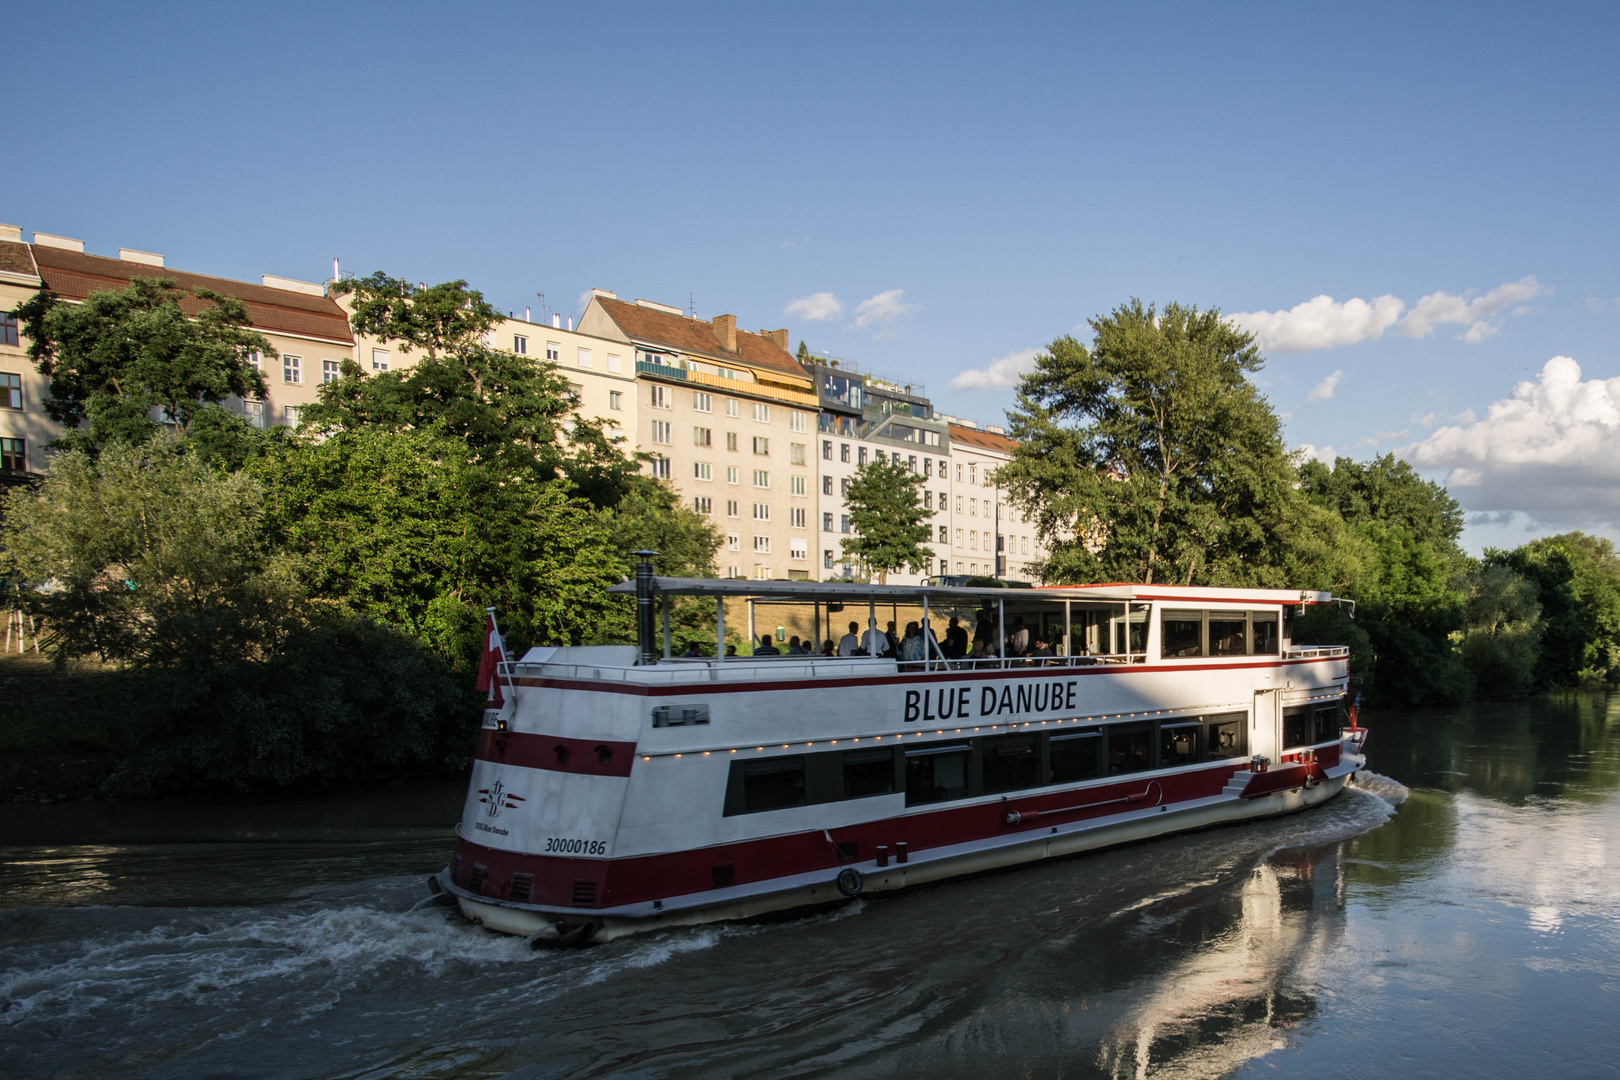 Wien am Donaukanal